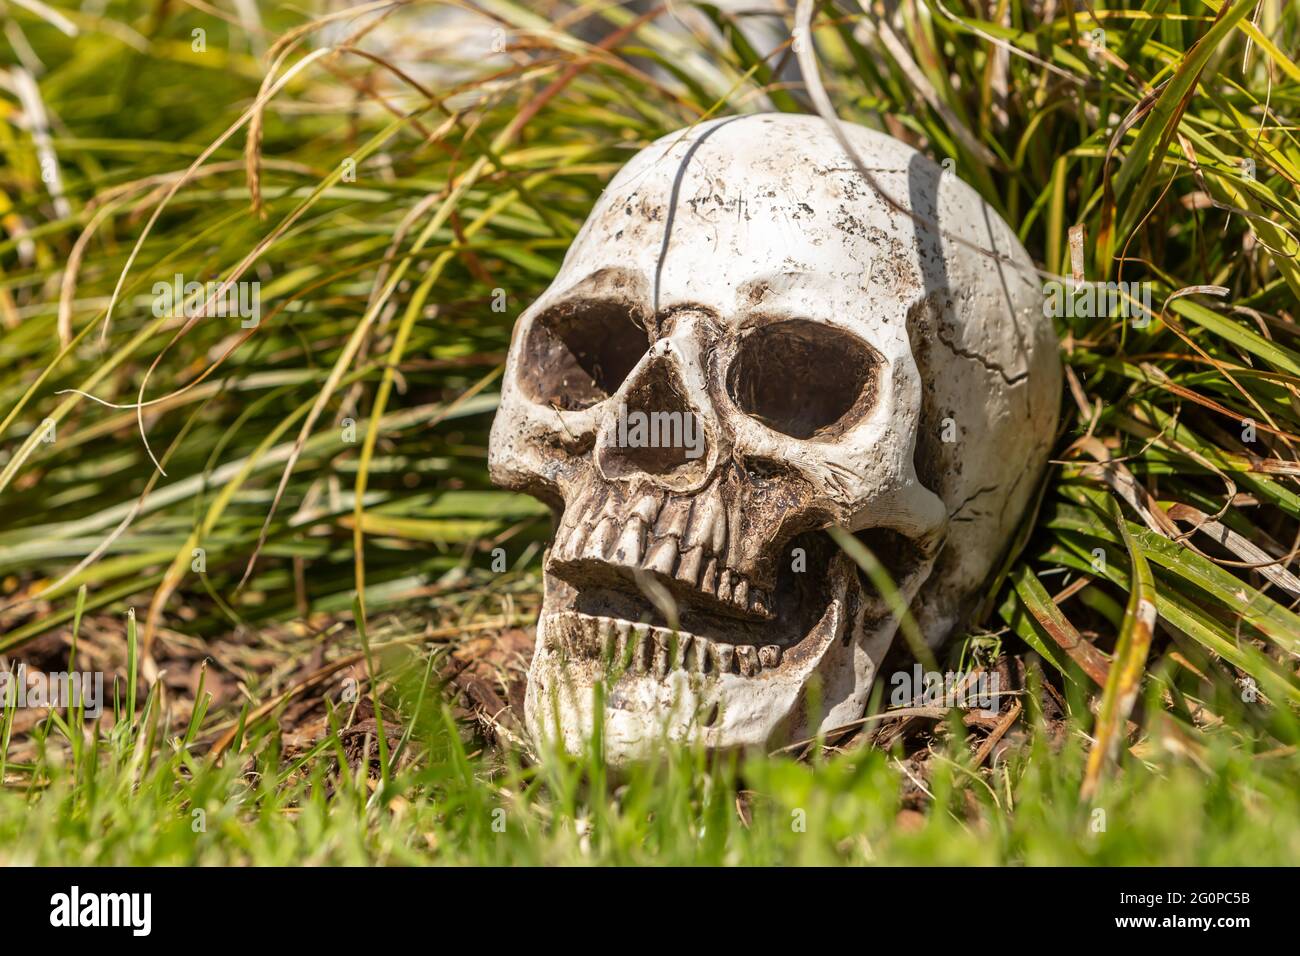 a human skull as an offbeat garden decoration Stock Photo